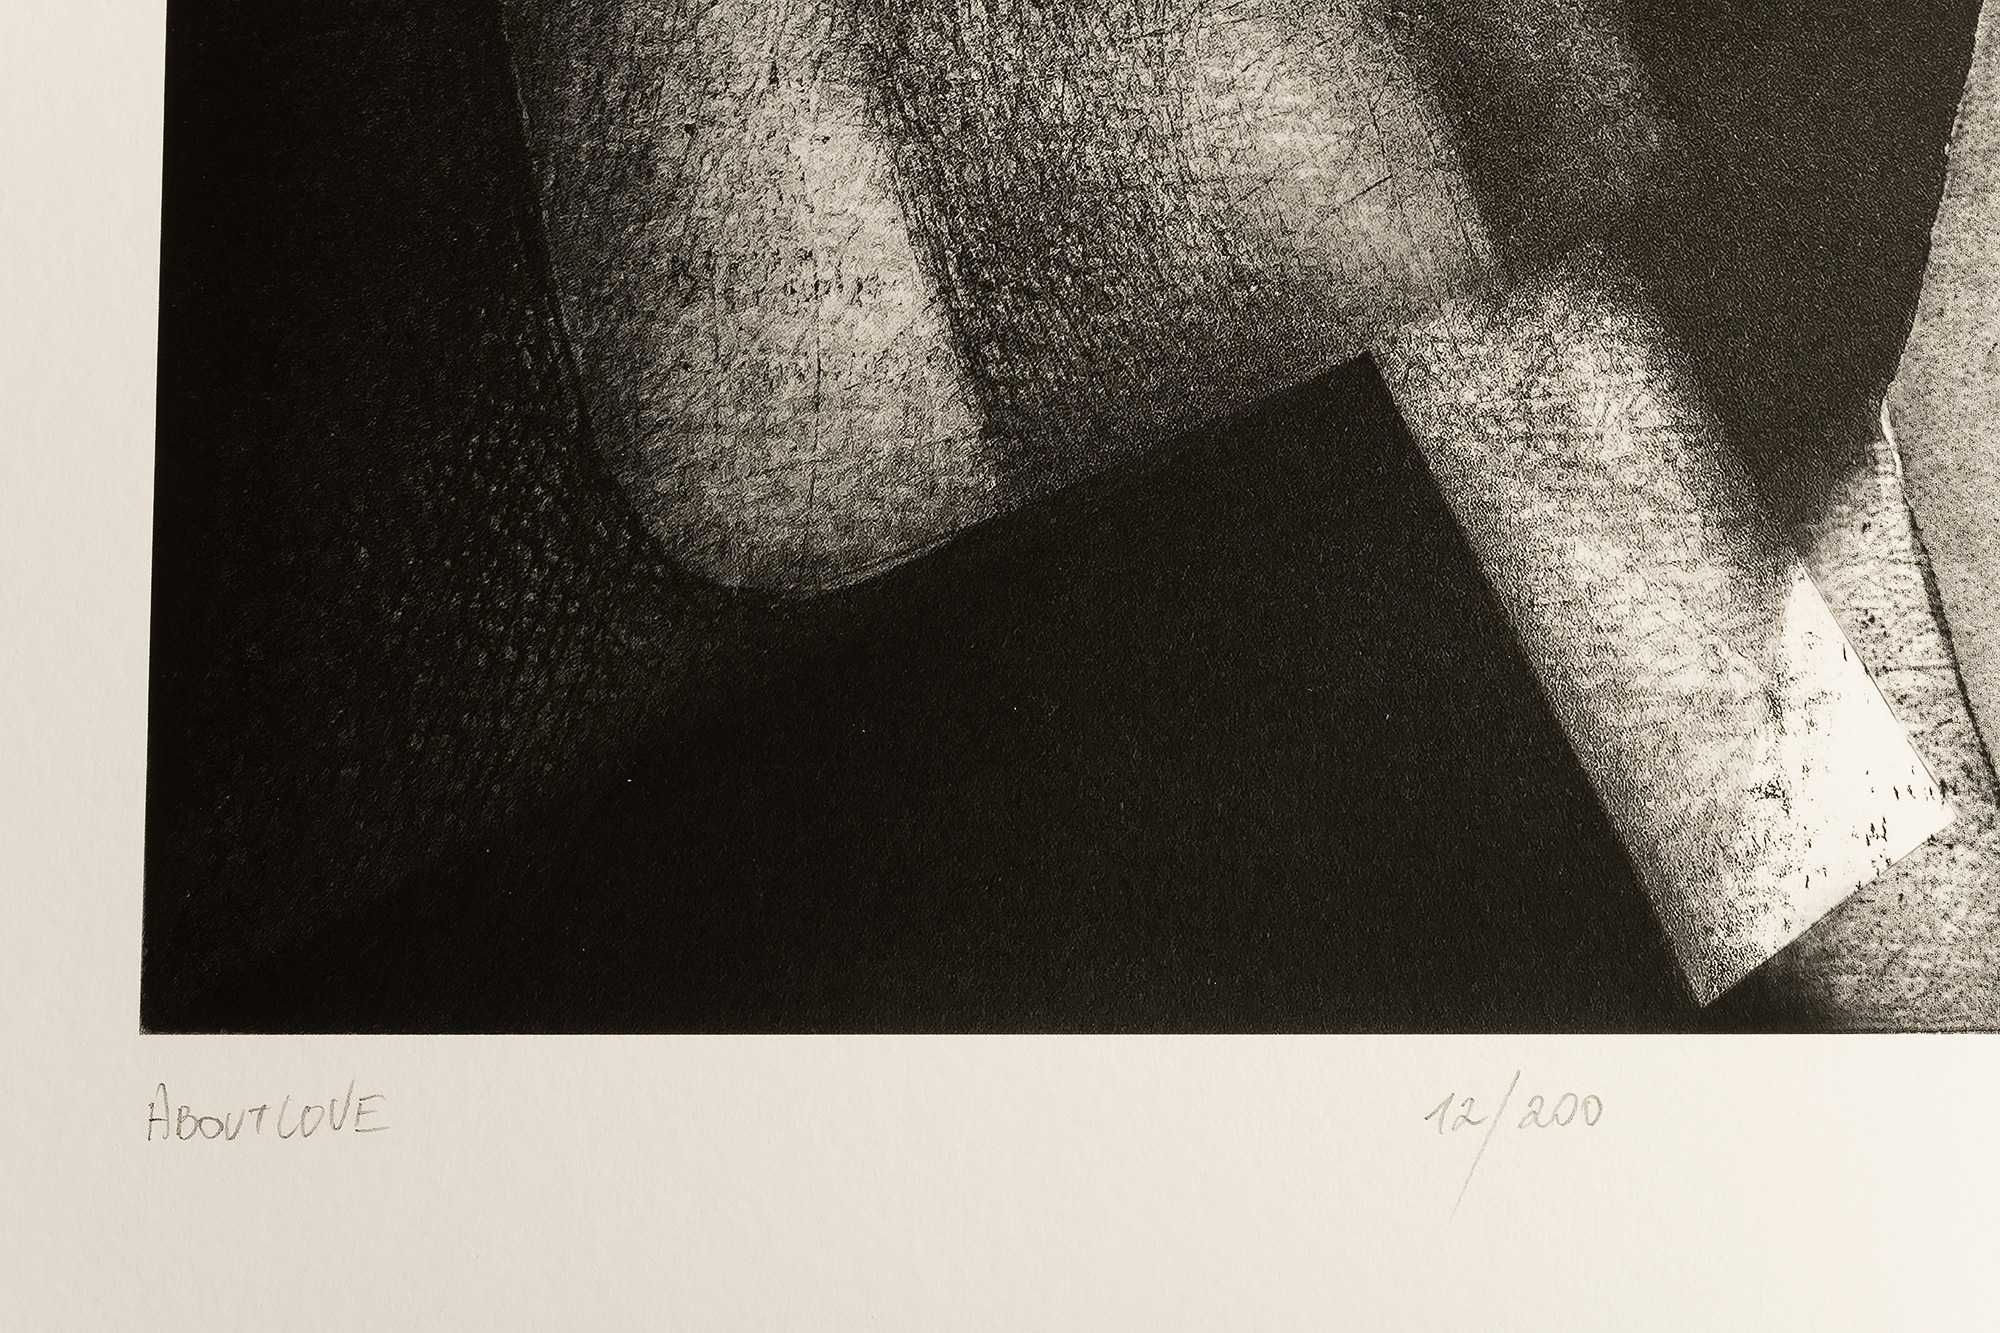 Grafika, inkografia, "About Love" 13/200 Cezary Tkaczyk, 50x60 cm